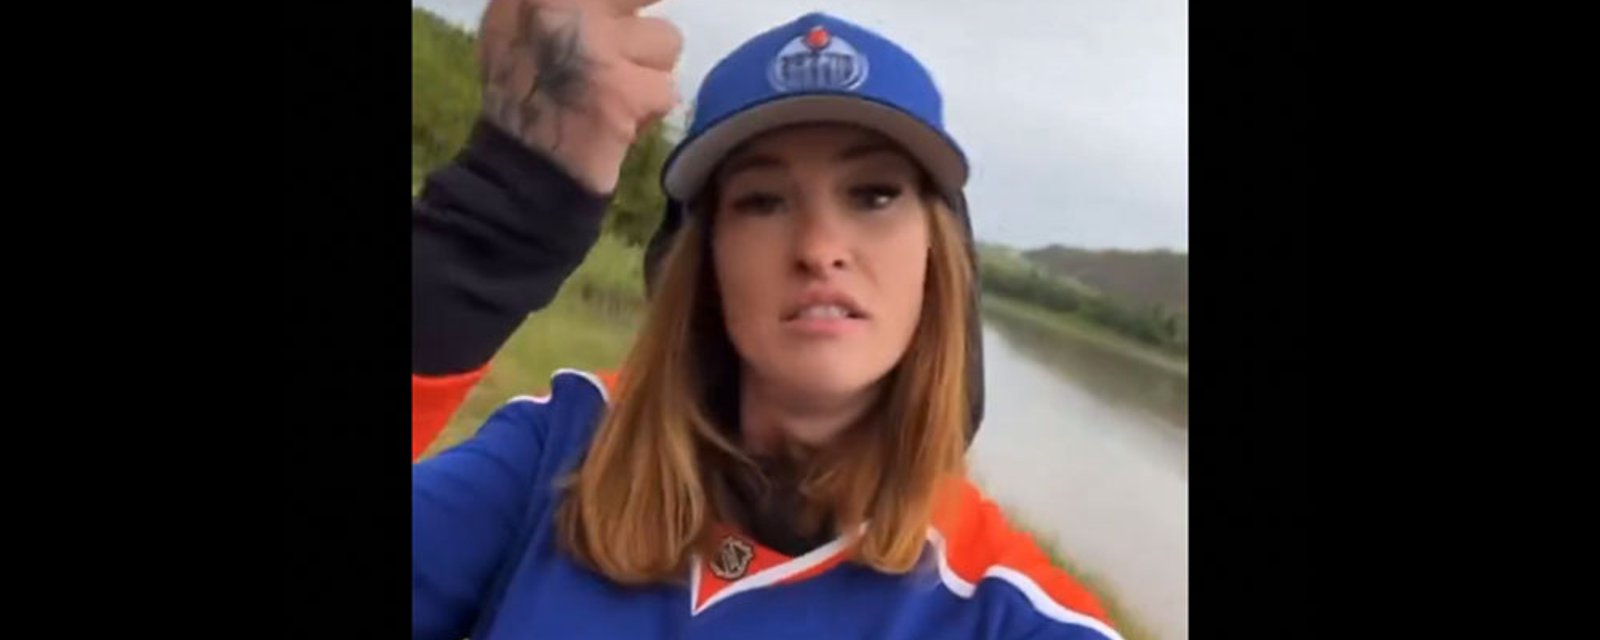 Everyone's favorite Oilers fan goes viral yet again!